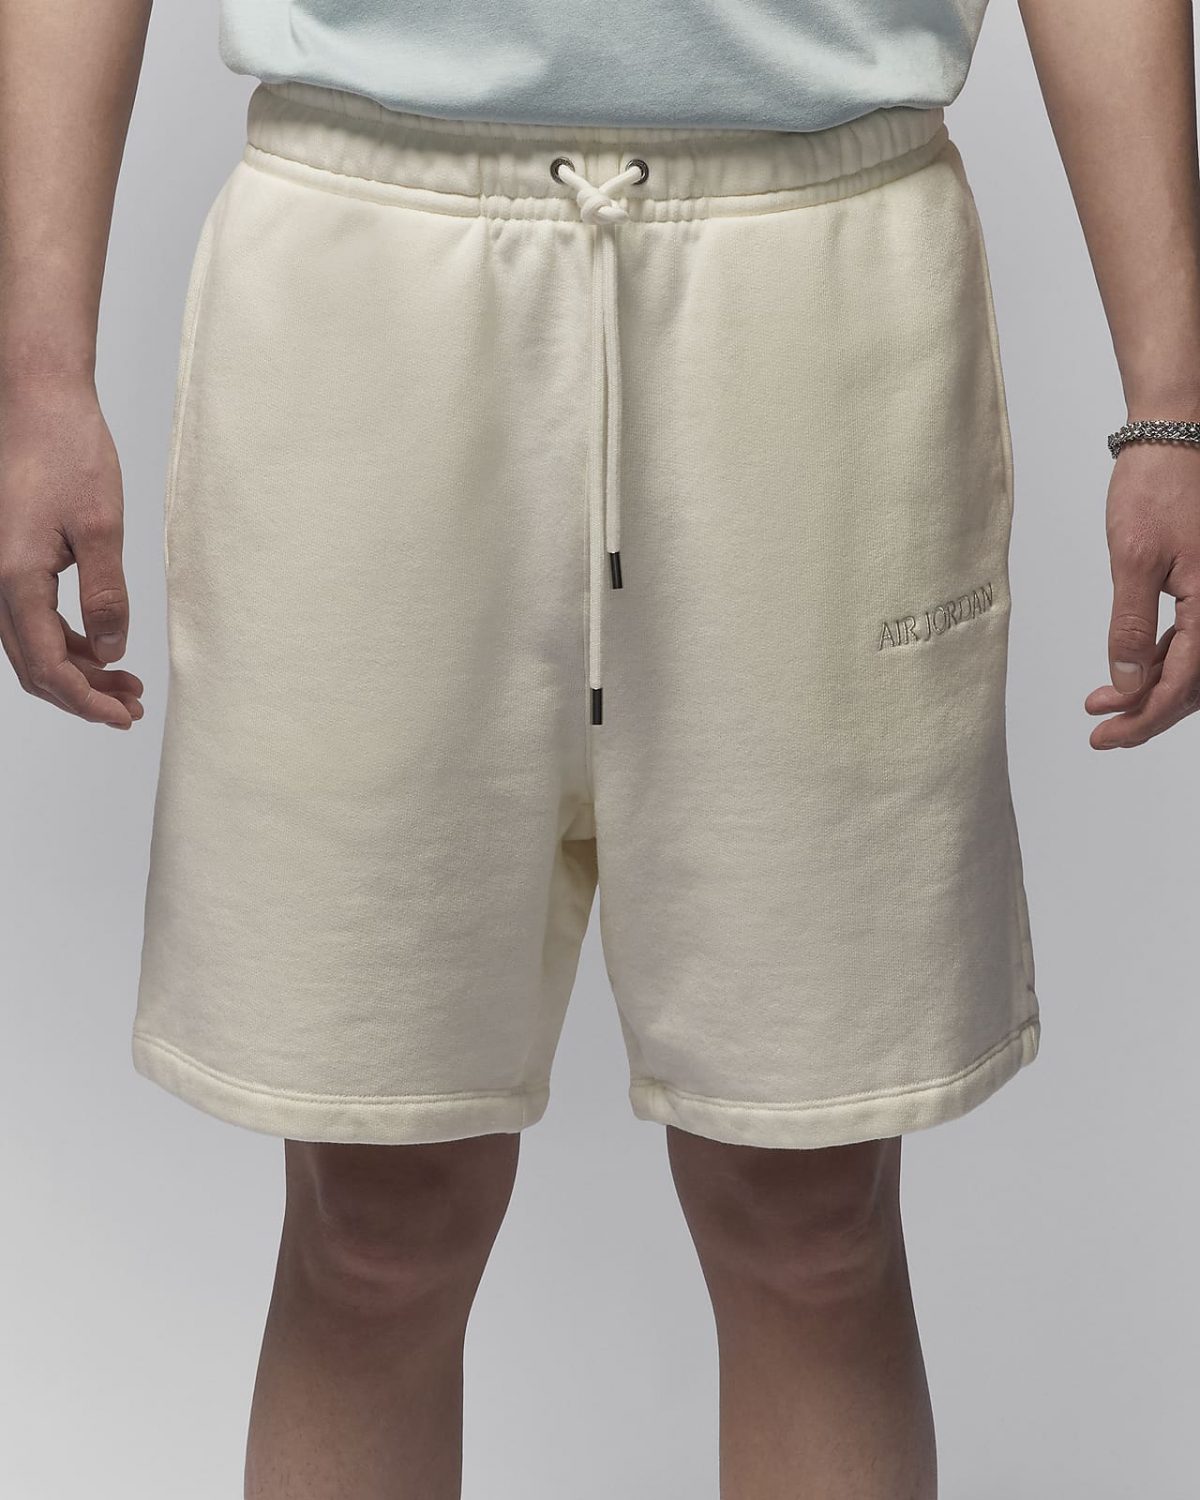 Мужские шорты nike Air Jordan Wordmark белые фотография